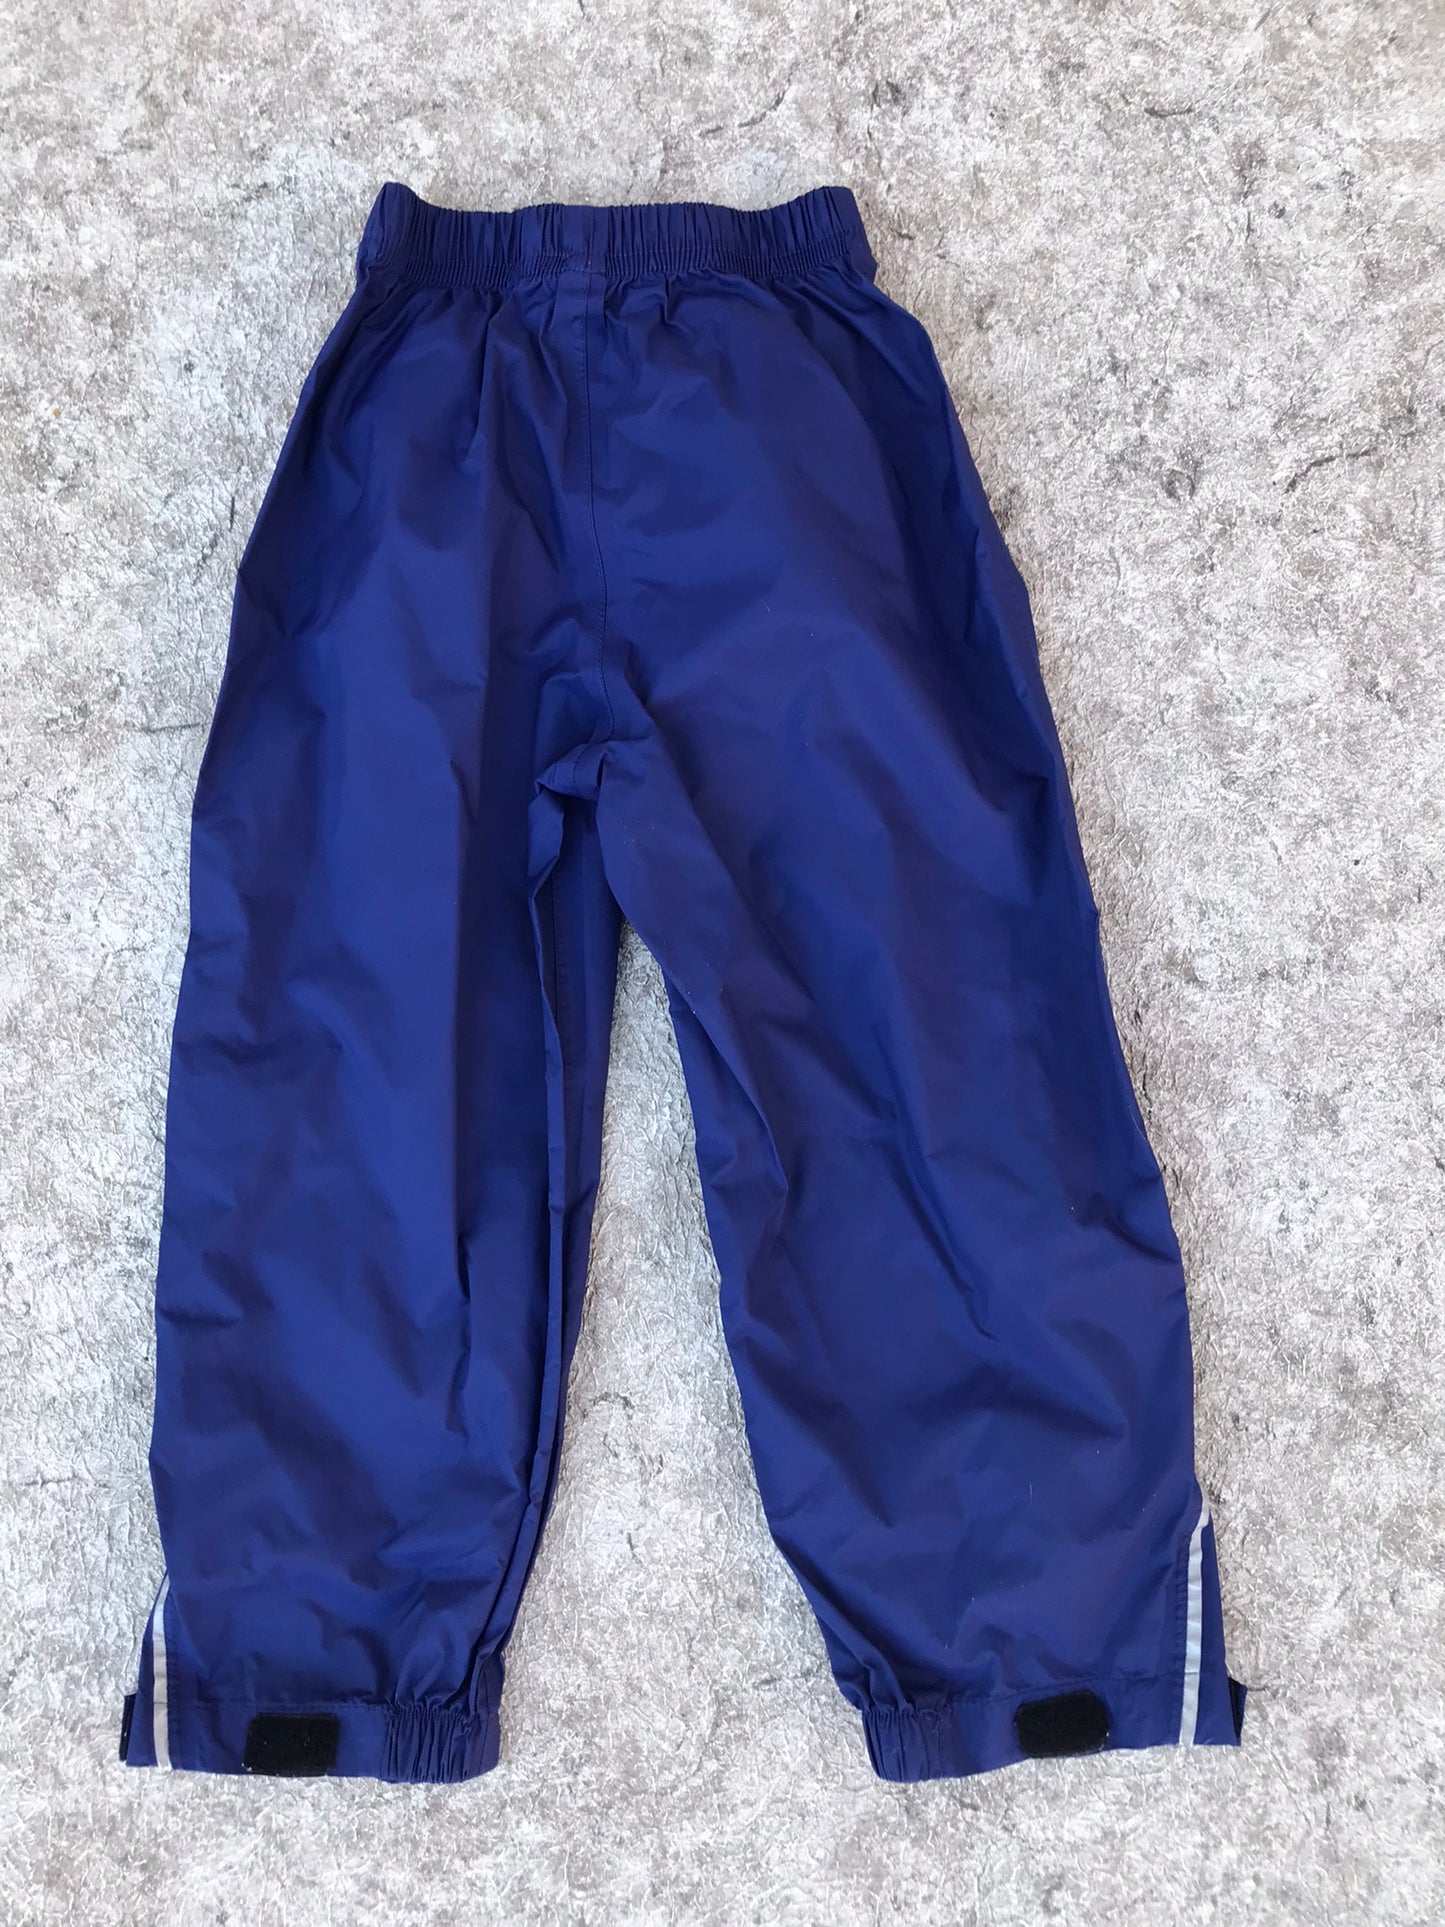 Rain Pants Child Size 4 Alpine Tec Blue Excellent